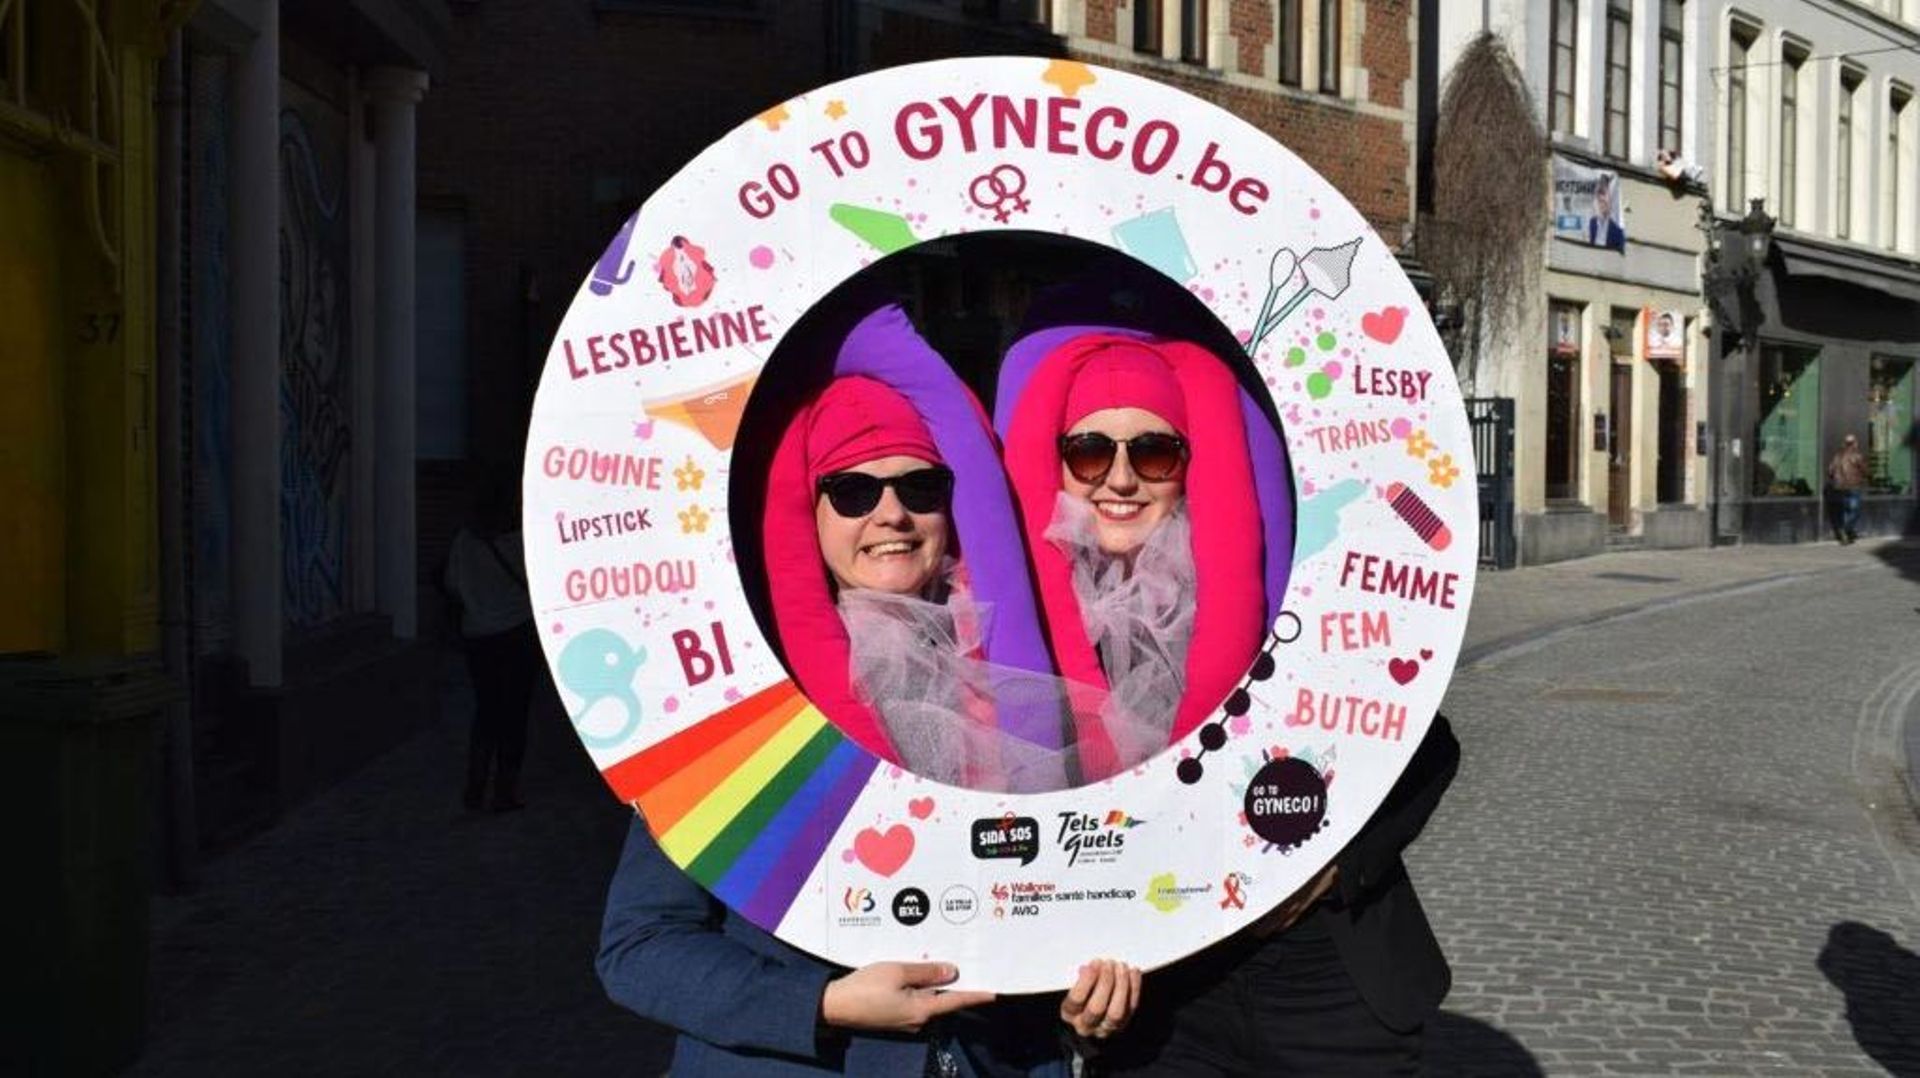 « Go To Gyneco », le premier site belge consacré à la santé sexuelle des lesbiennes